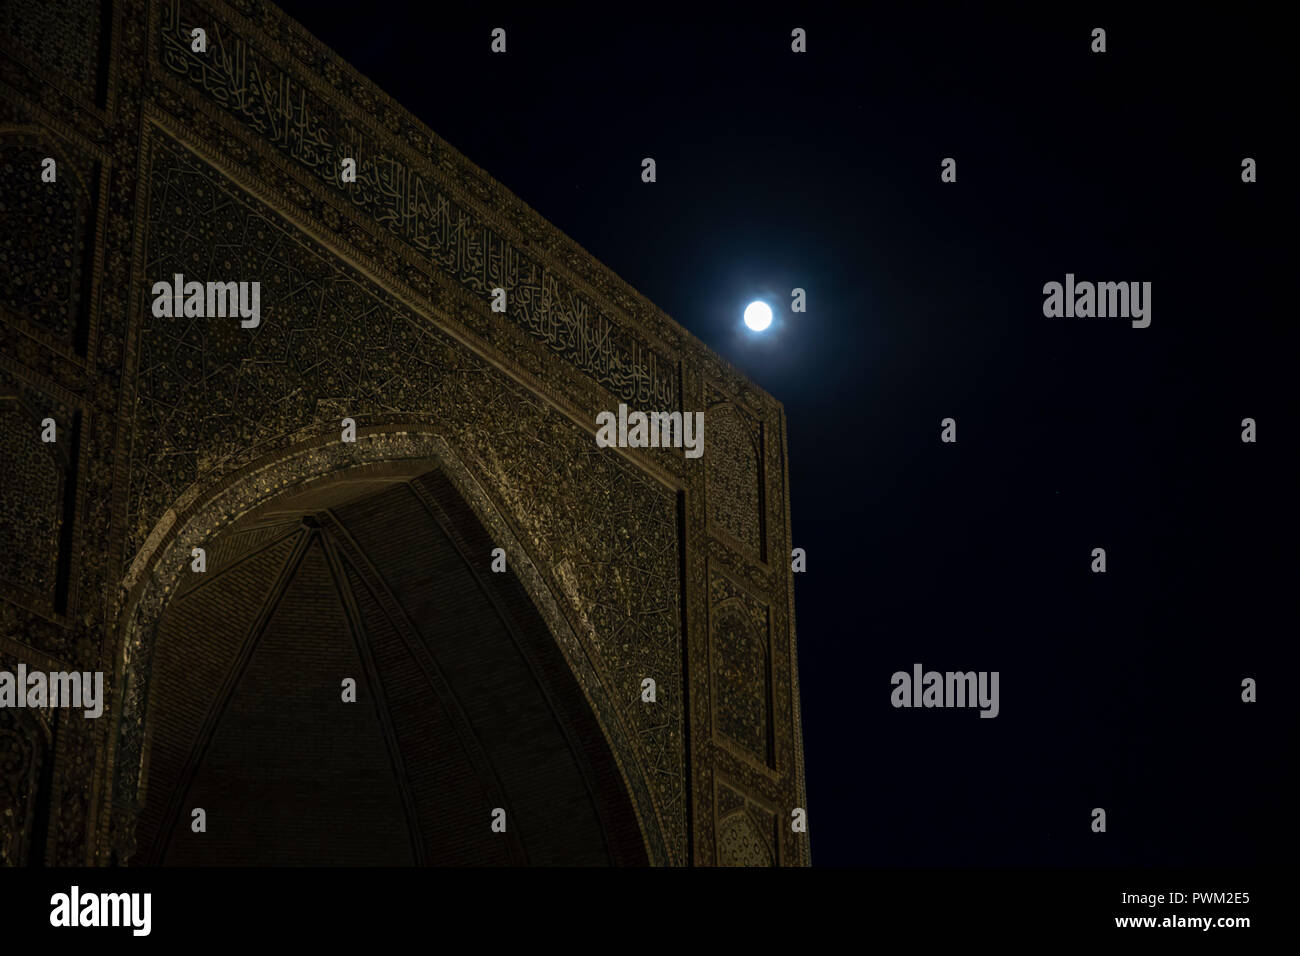 Full moon over entrance to Mir-i-Arab Madrasa illuminated at night in Bukhara, Uzbekistan. Stock Photo